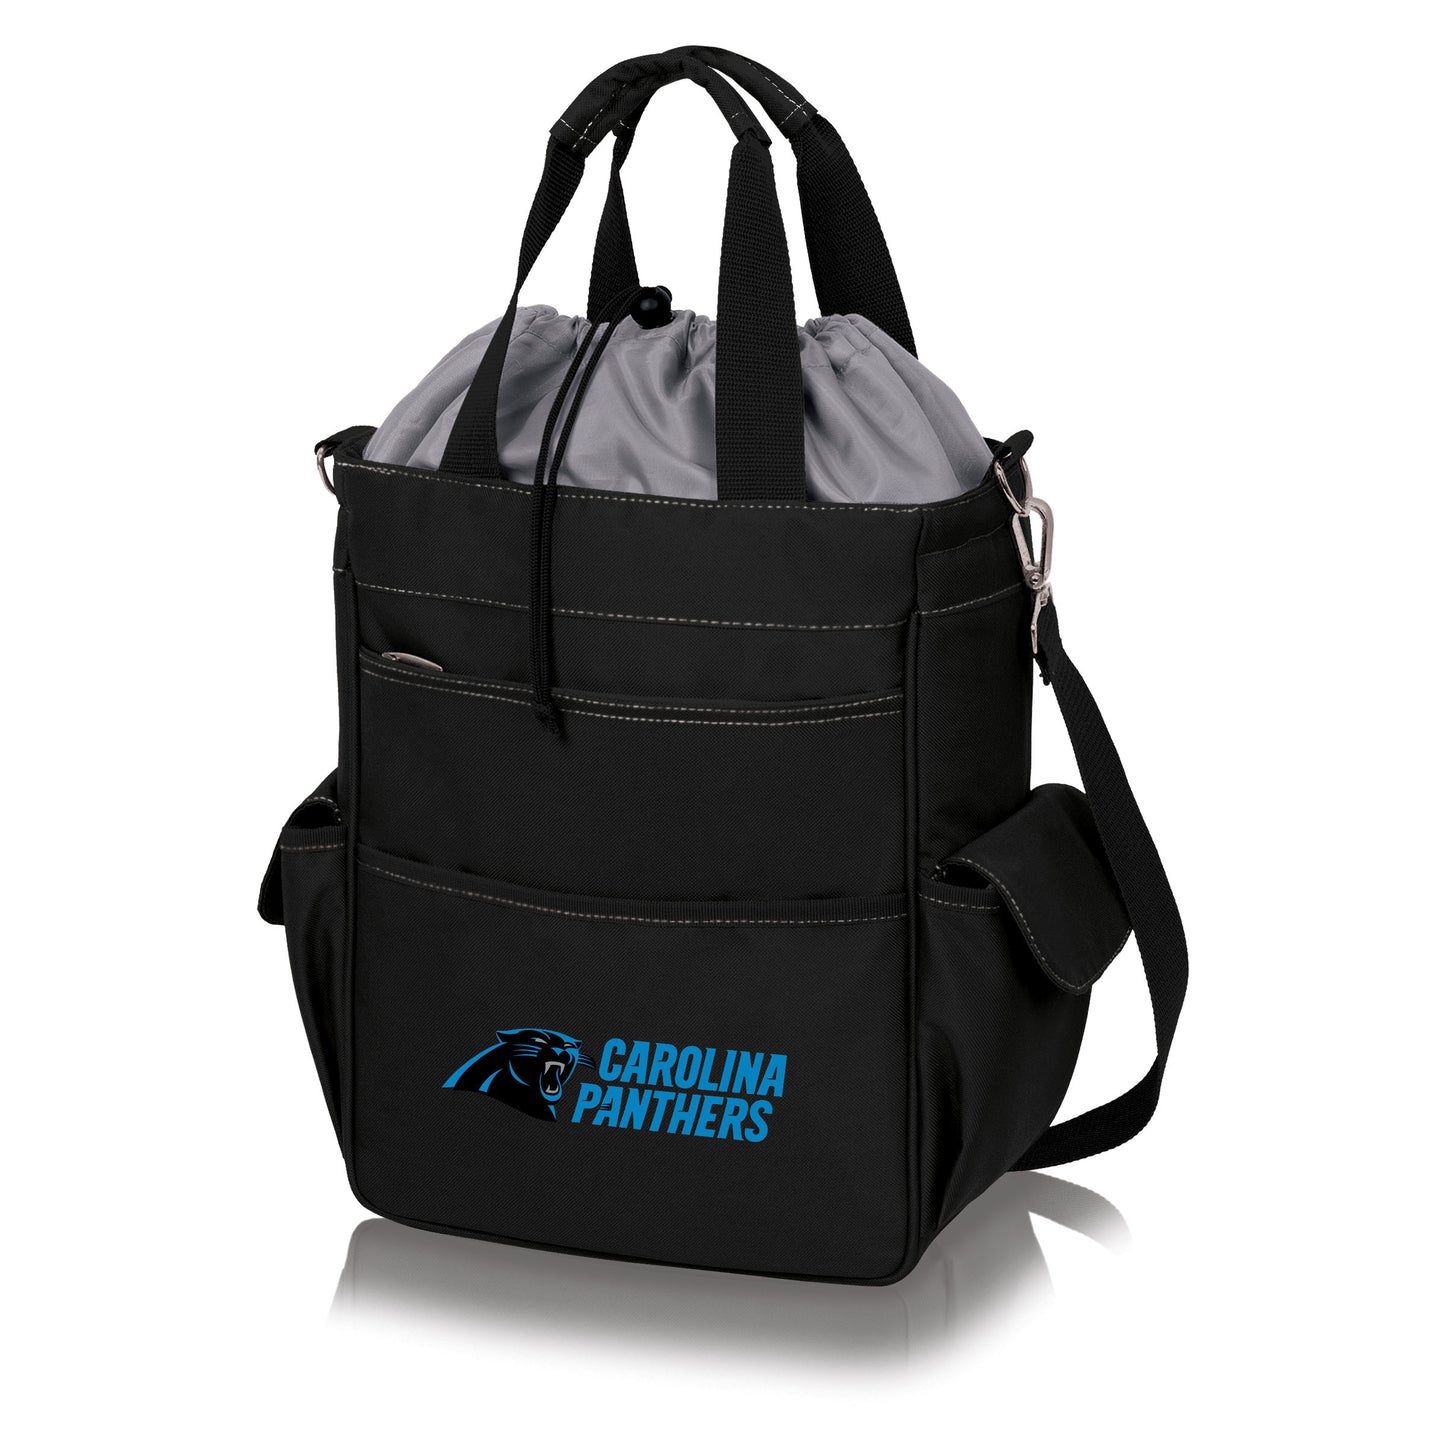 Carolina Panthers - Activo Cooler Tote Bag